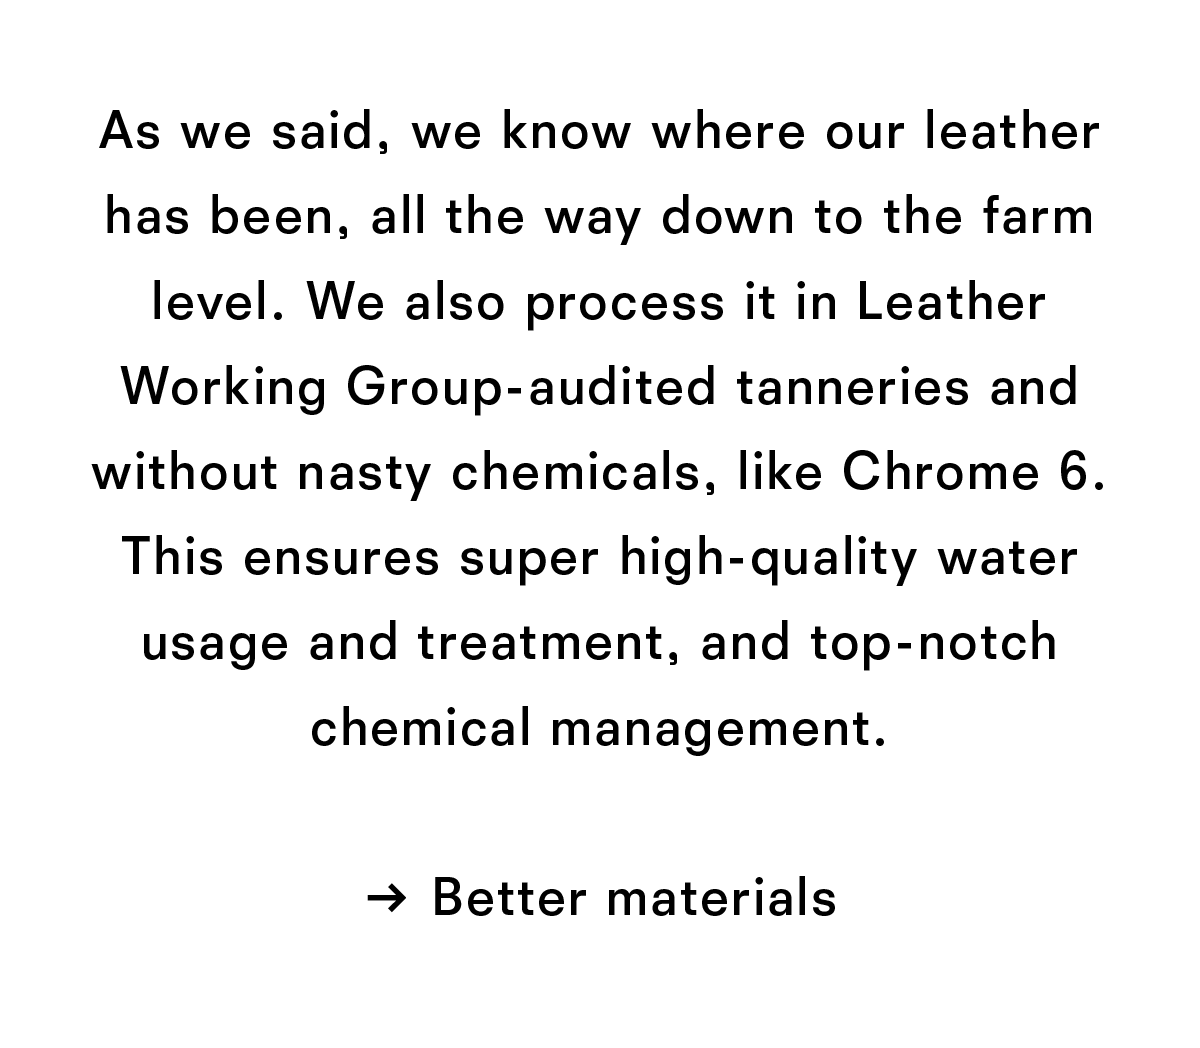 Better materials